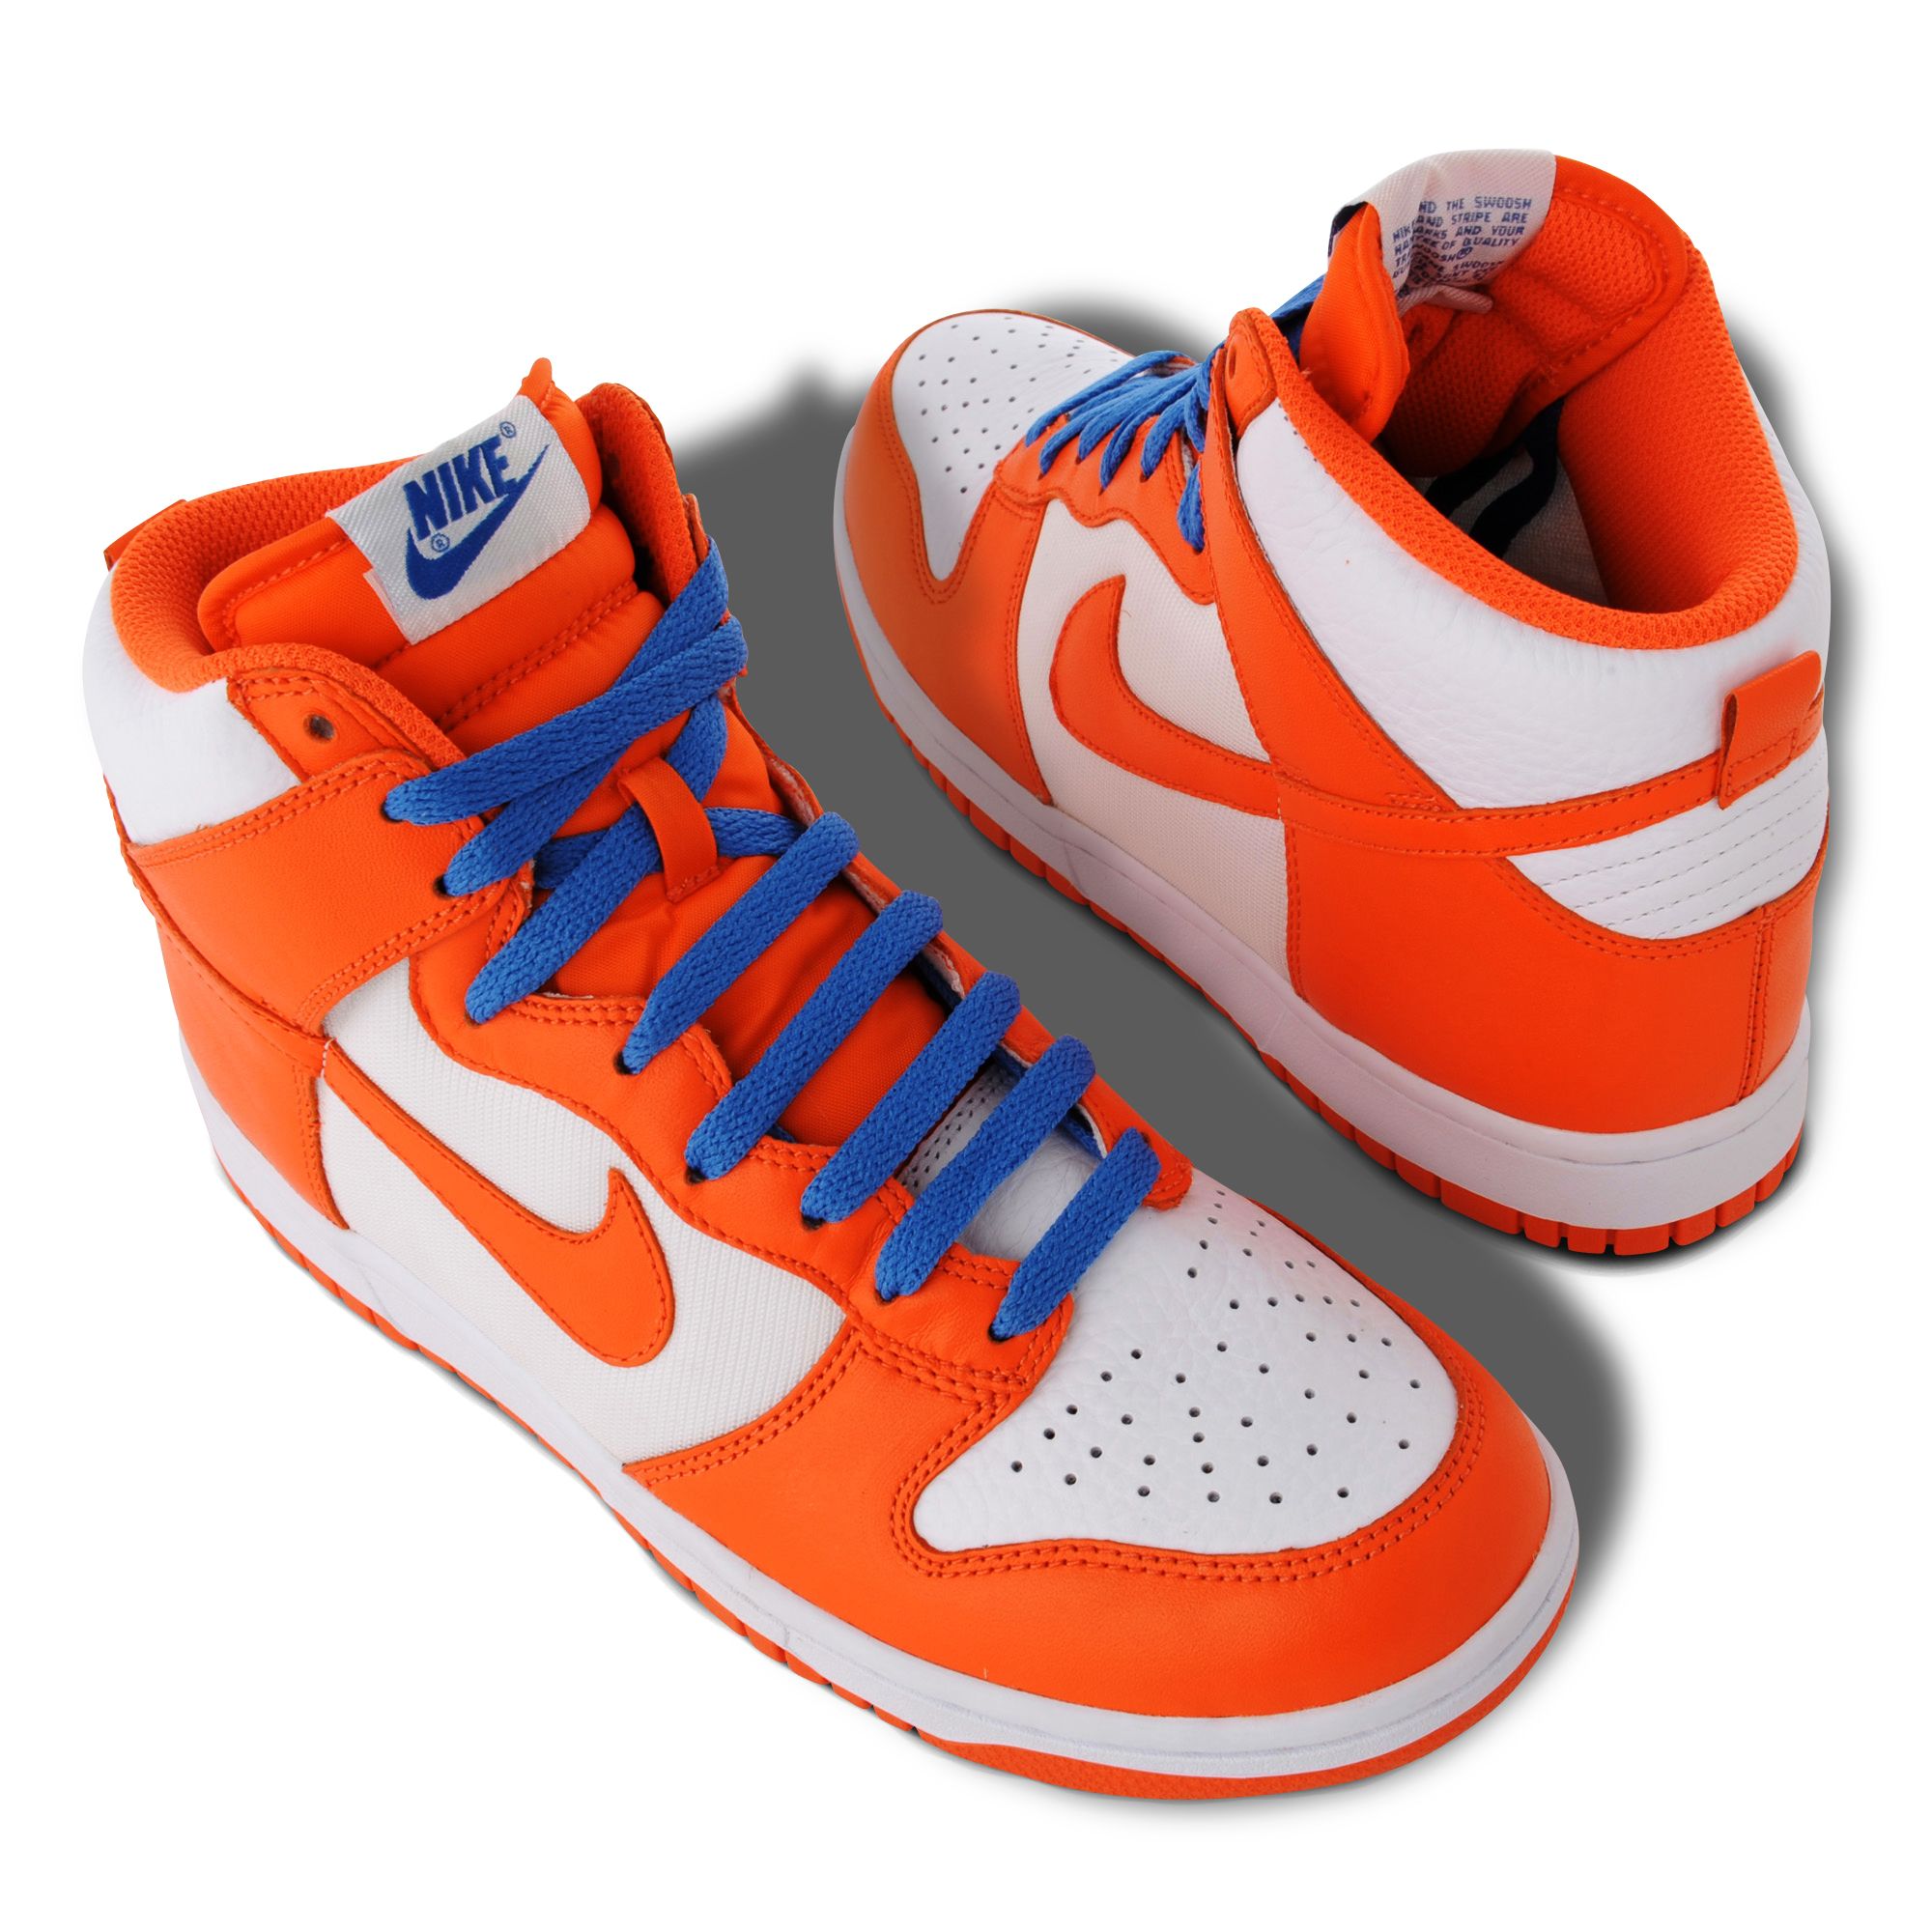 orange nike shoes high tops